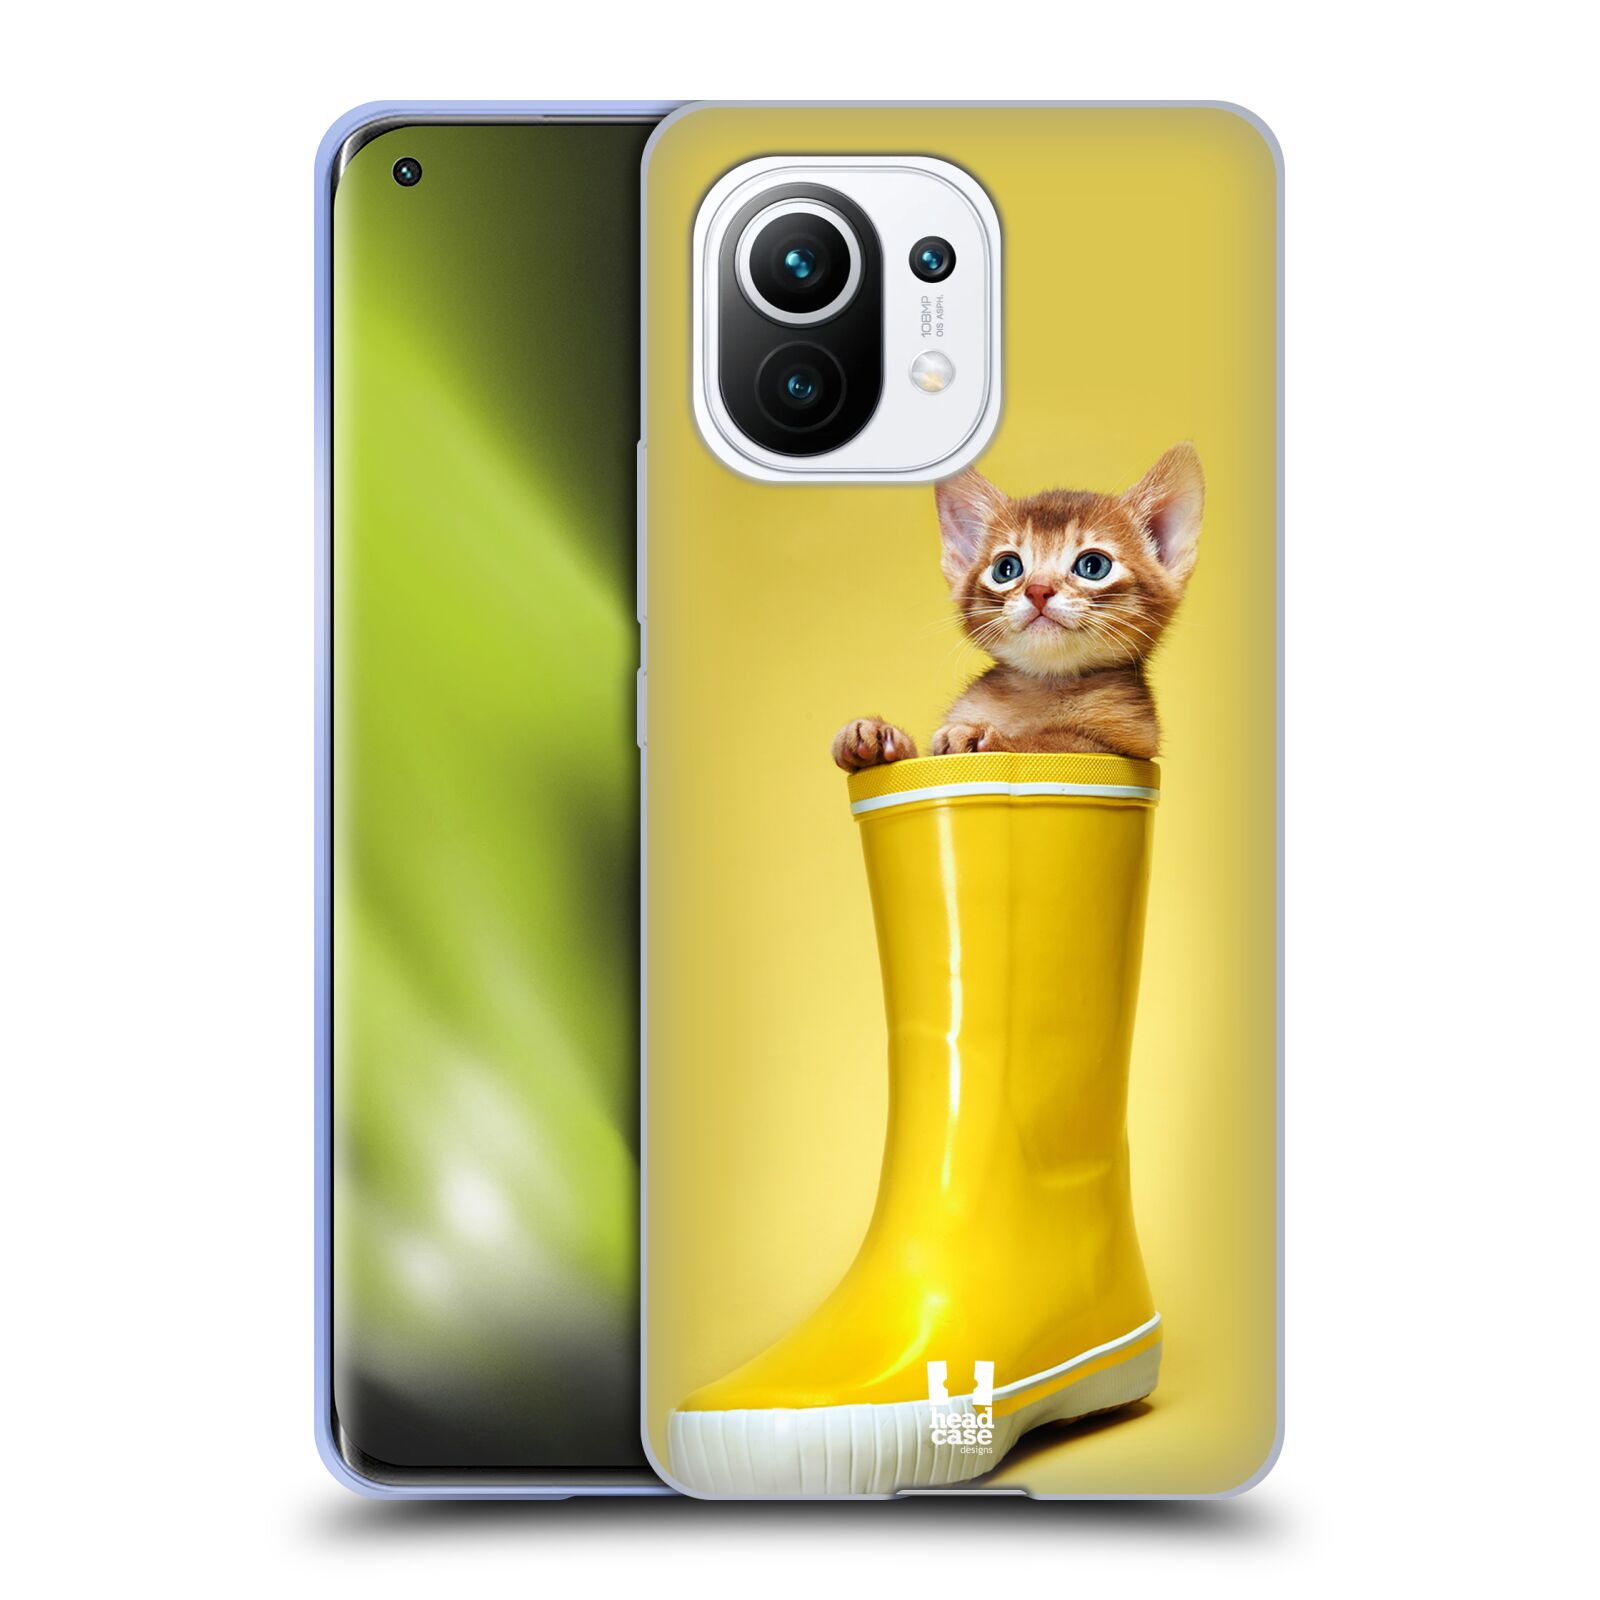 Plastový obal HEAD CASE na mobil Xiaomi Mi 11 vzor Legrační zvířátka kotě v botě žlutá